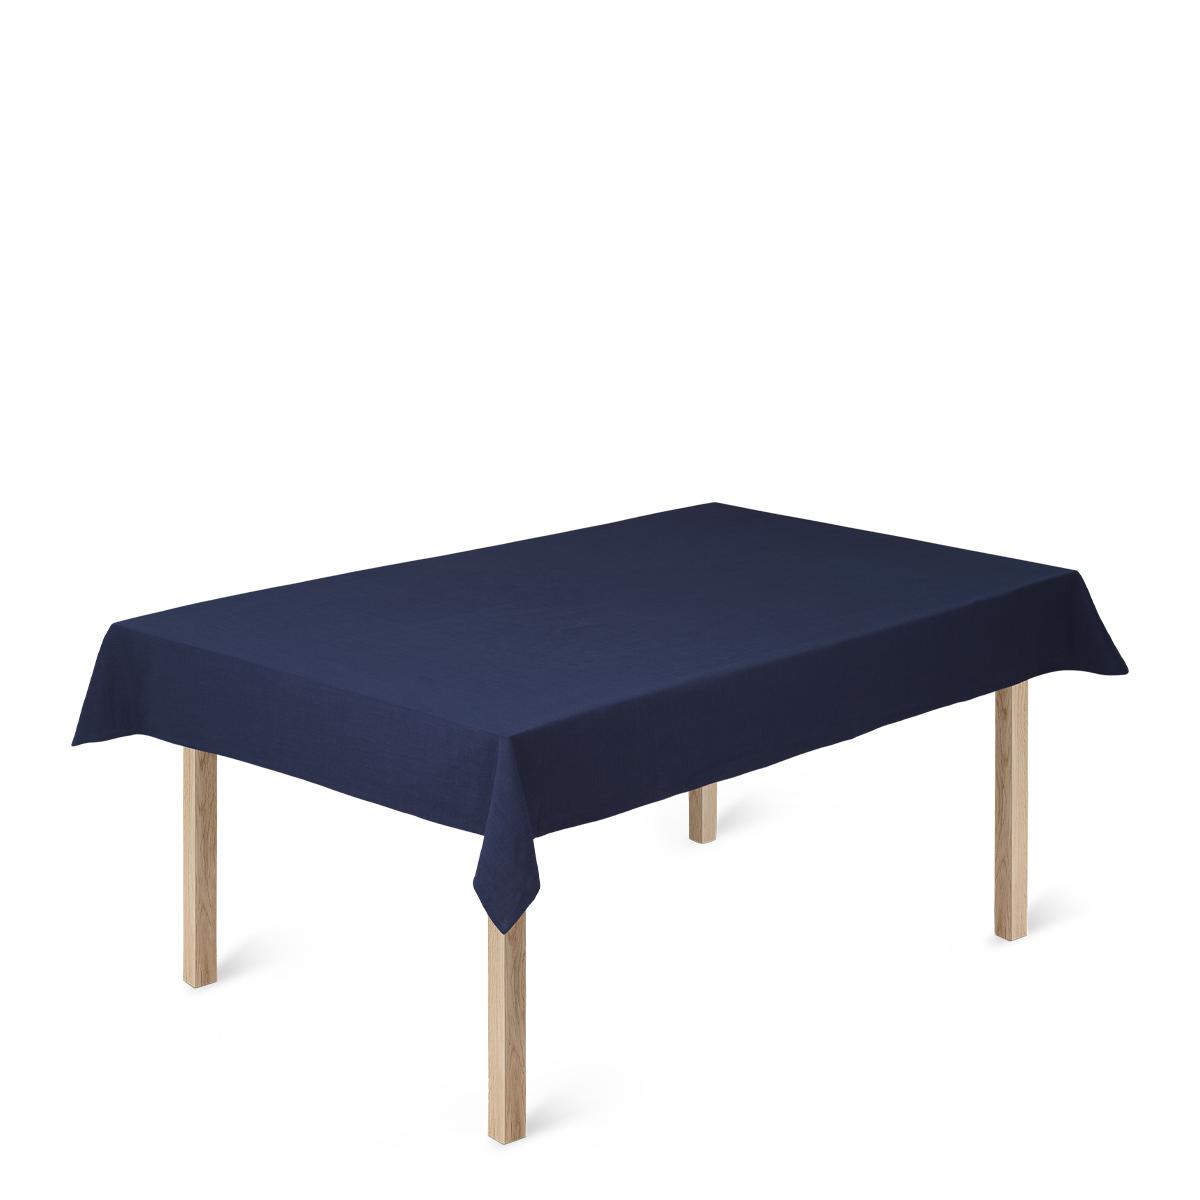 Toca de mesa de algodão BASIC BASIC 150 x270 cm, azul escuro